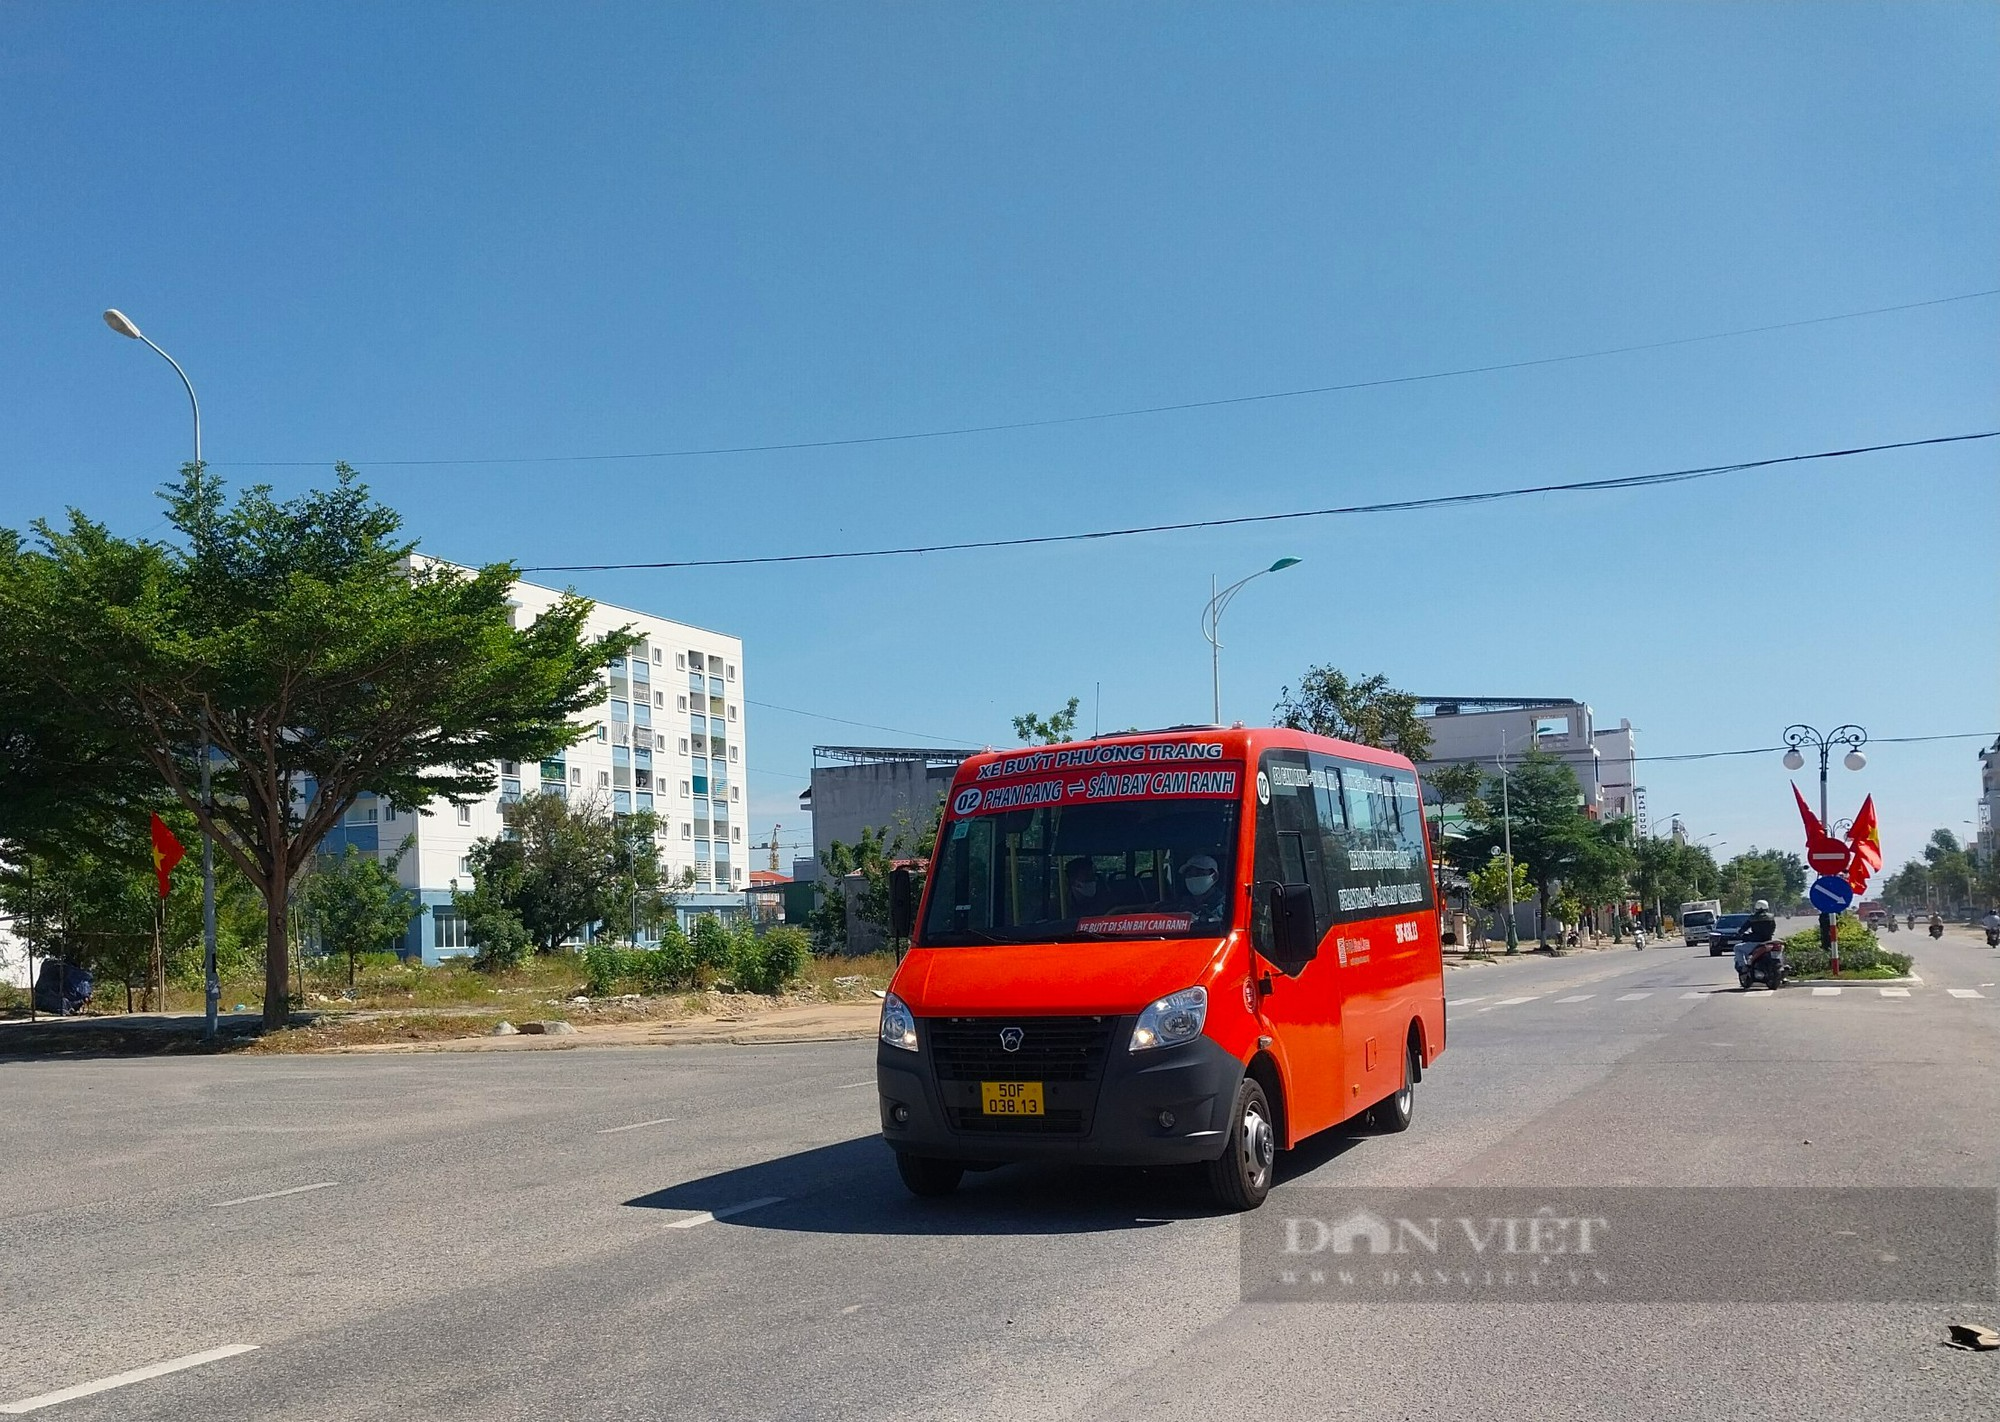 Chính thức đưa vào hoạt động 2 tuyến xe buýt liên tỉnh kết nối Ninh Thuận với Bình Thuận và Khánh Hòa - Ảnh 3.